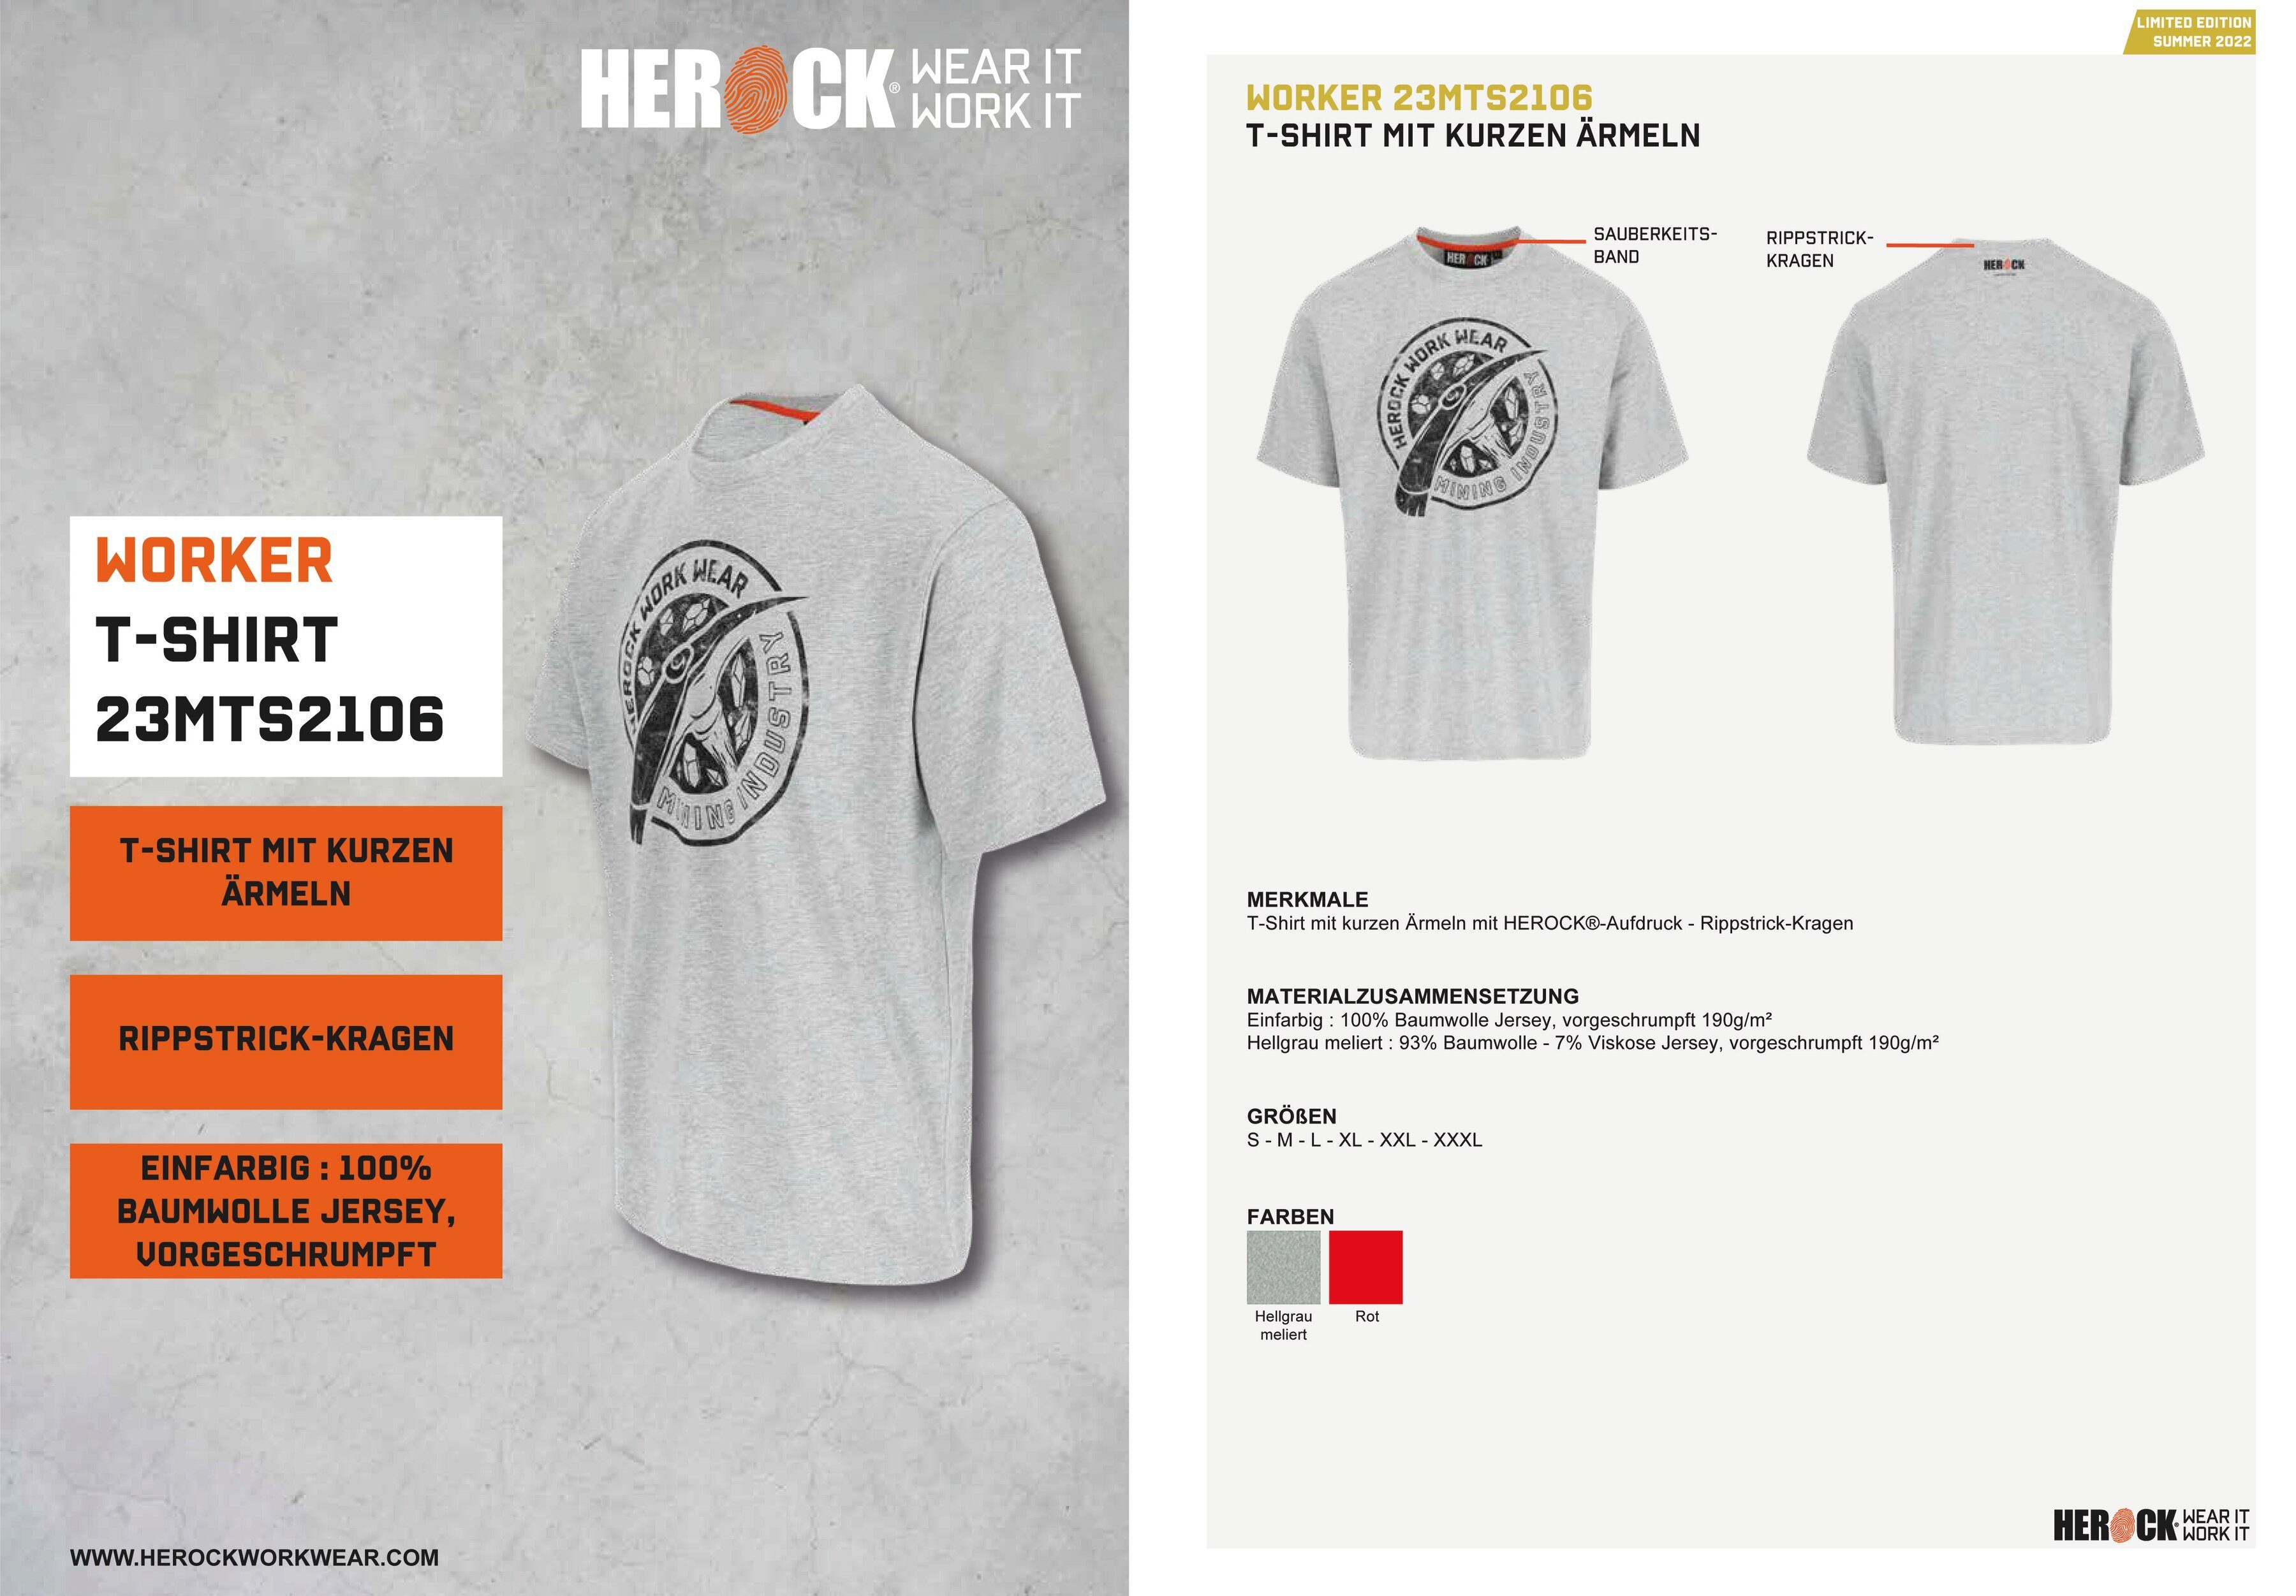 Herock T-Shirt Worker Farben in erhältlich Limited Edition, hellgrau verschiedene